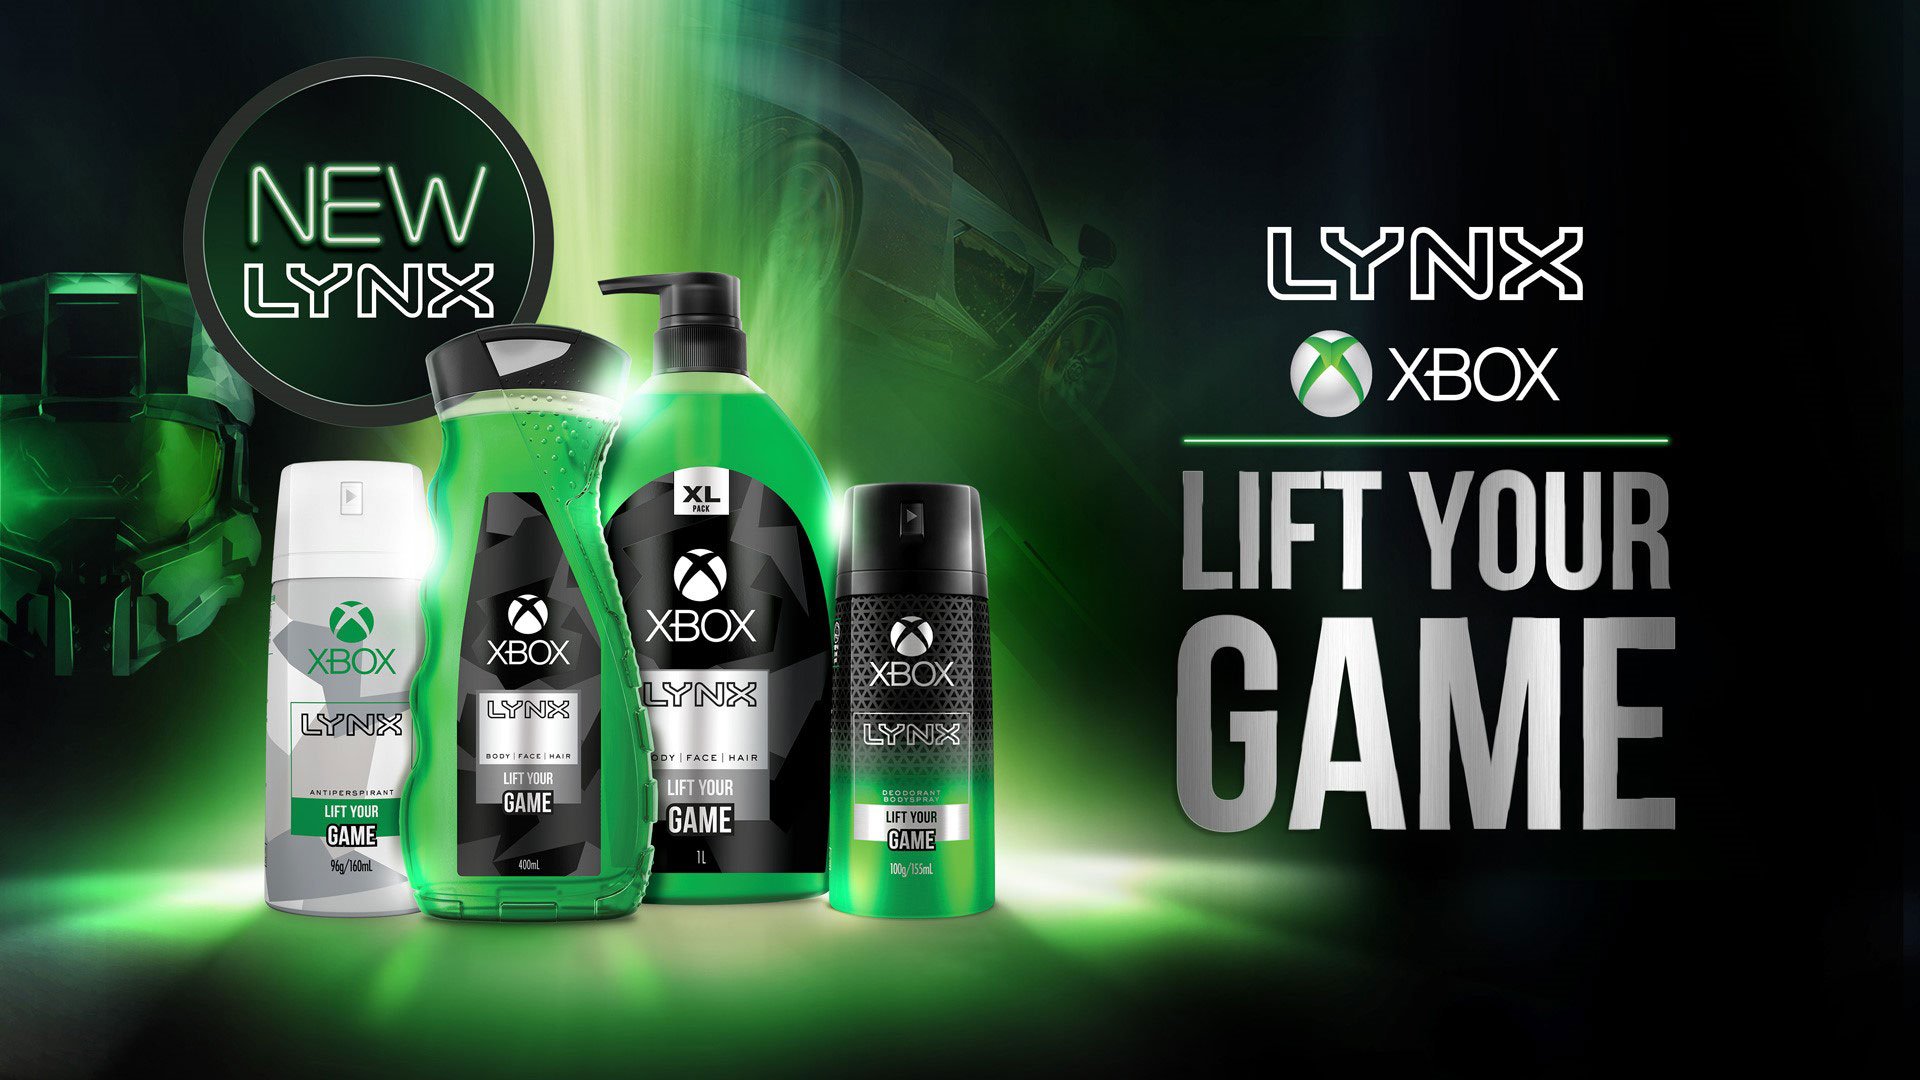 Image 1 : Microsoft se lance dans le gel douche avec Xbox Lynx